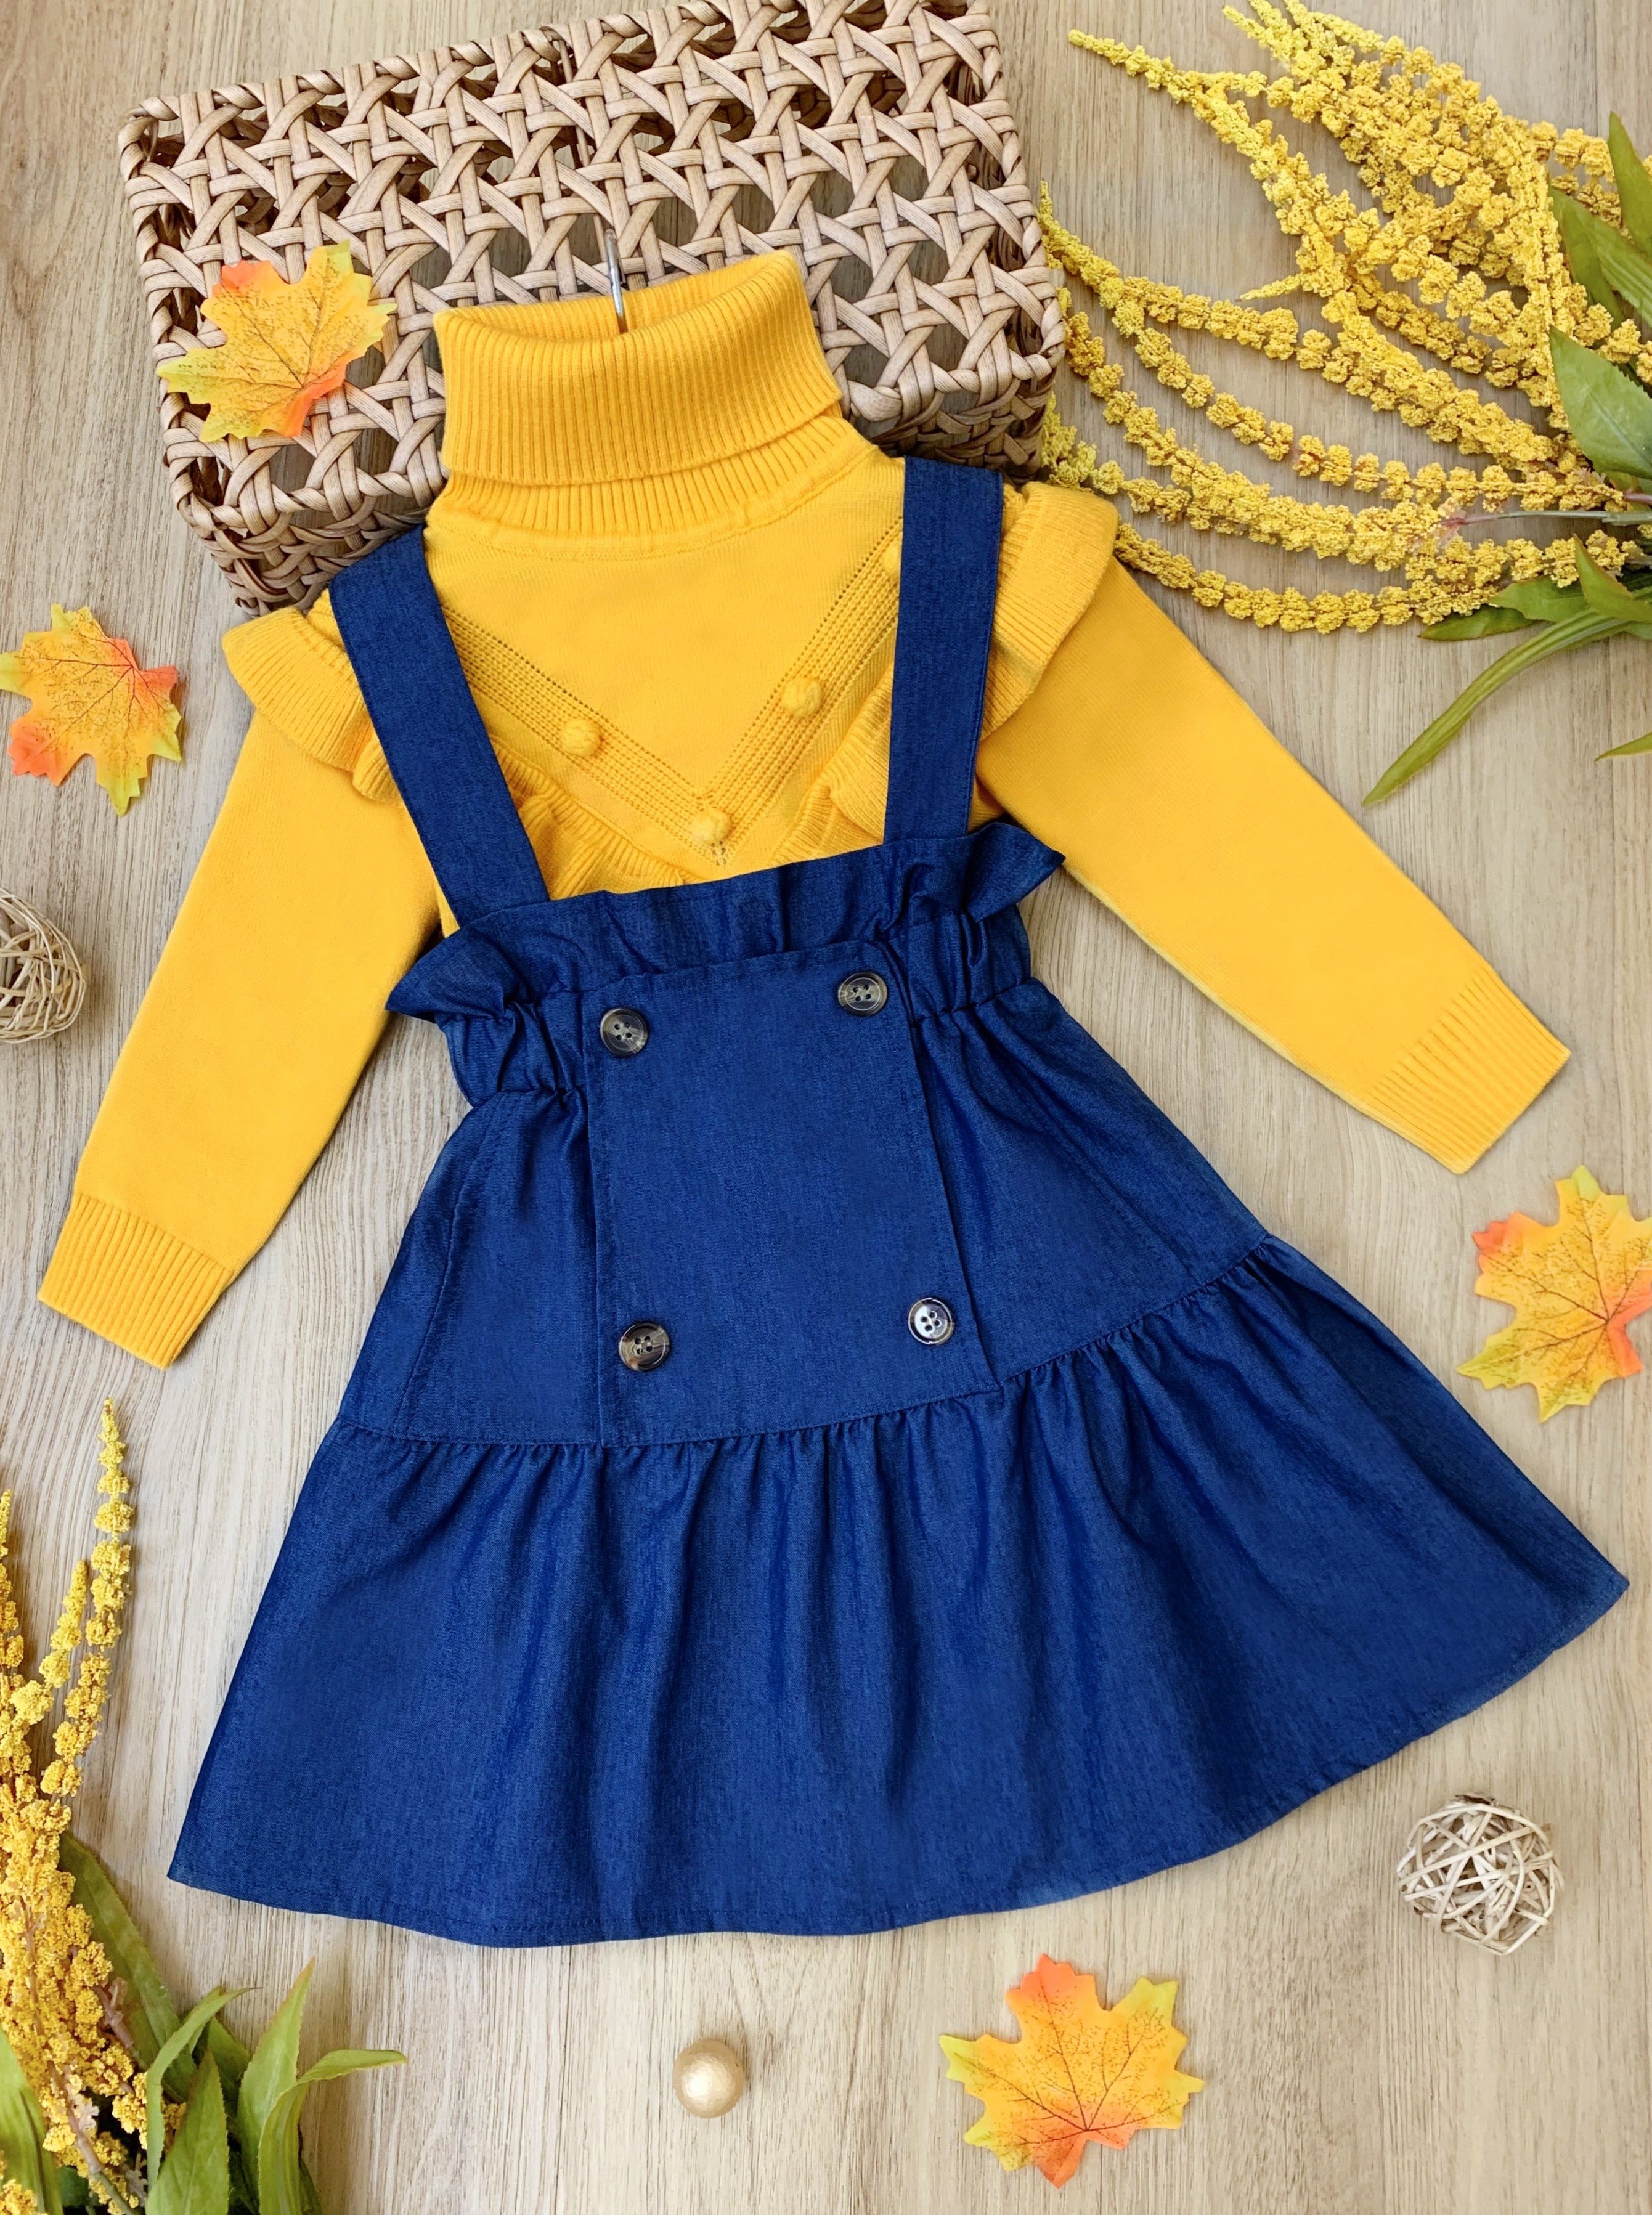 Girls Preppy Turtleneck Sweater & Overall Skirt Set - Mia Belle Girls